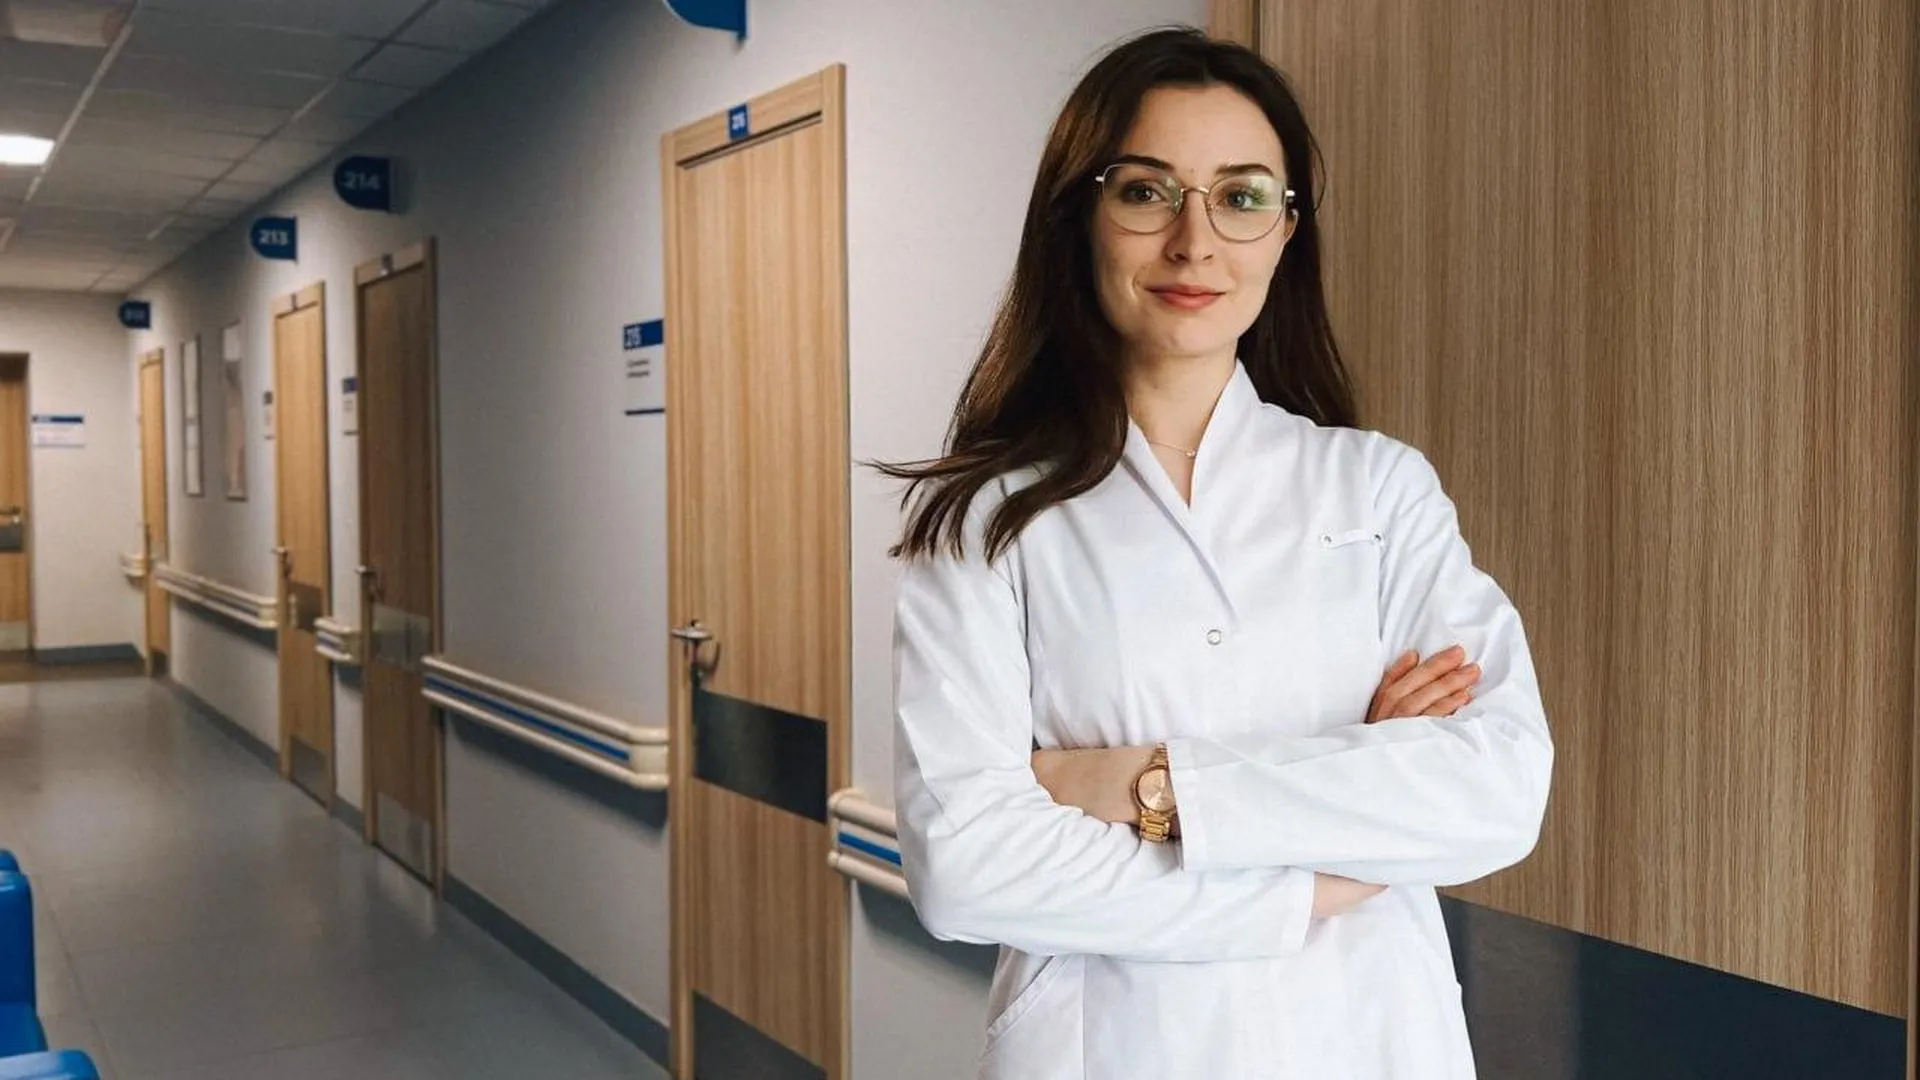 Свыше 120 медиков получили работу в Подмосковье по программе «Приведи друга» в этом году